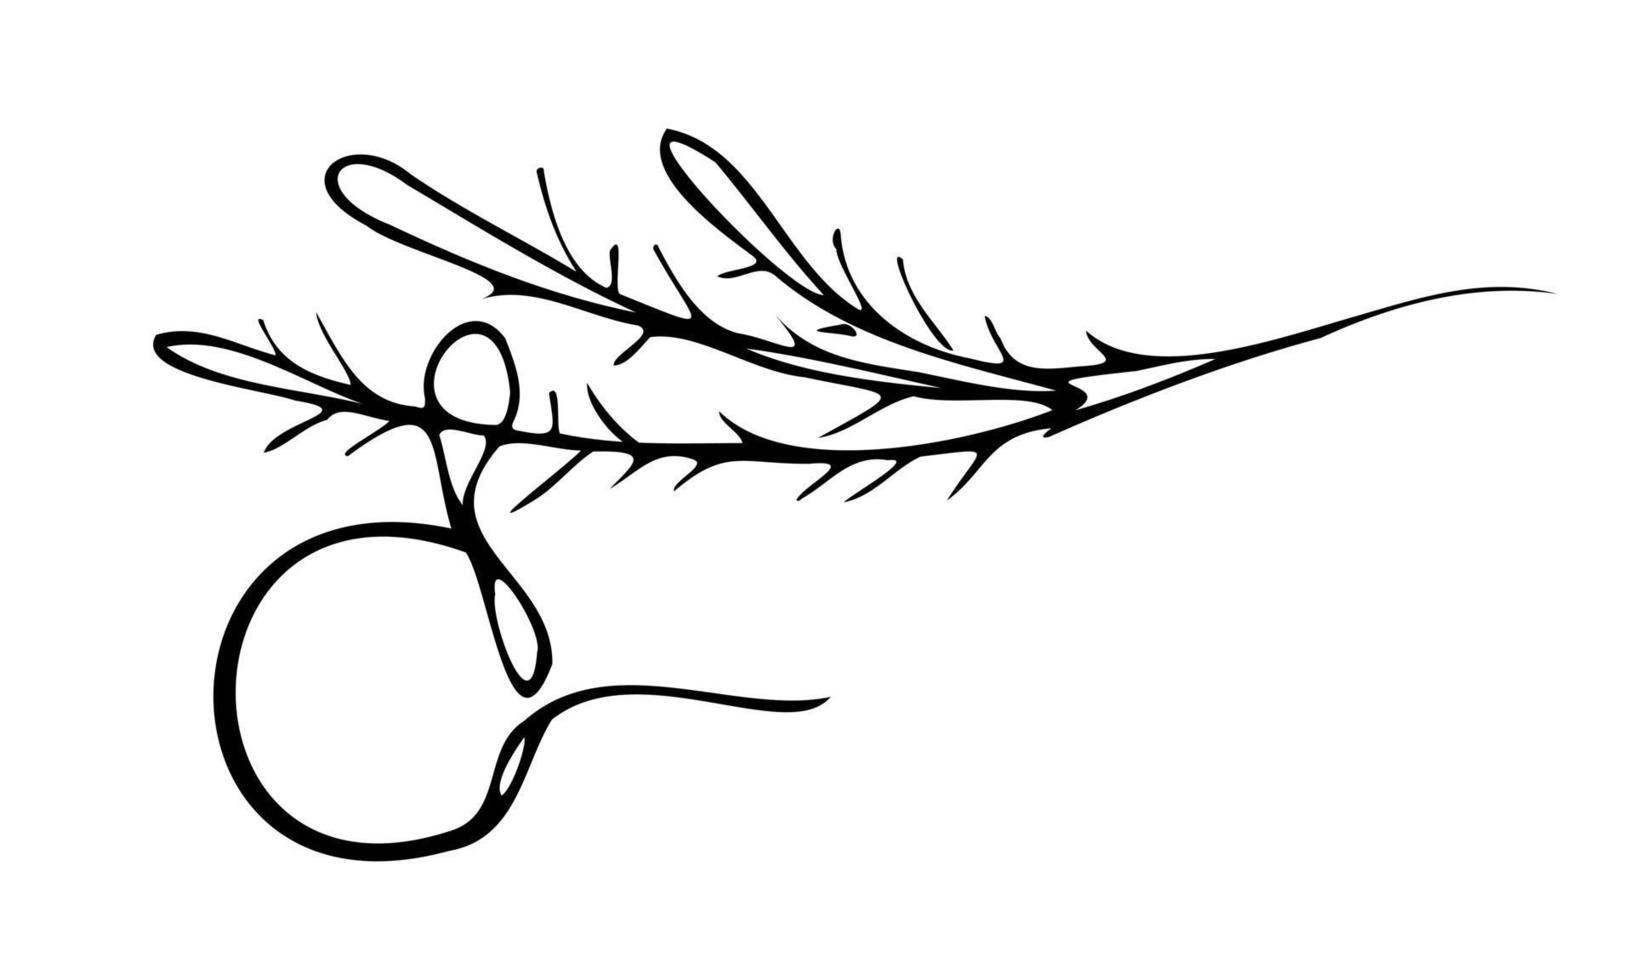 rama espinosa de arte lineal con bola de navidad en el fondo blanco. ilustración vectorial vector